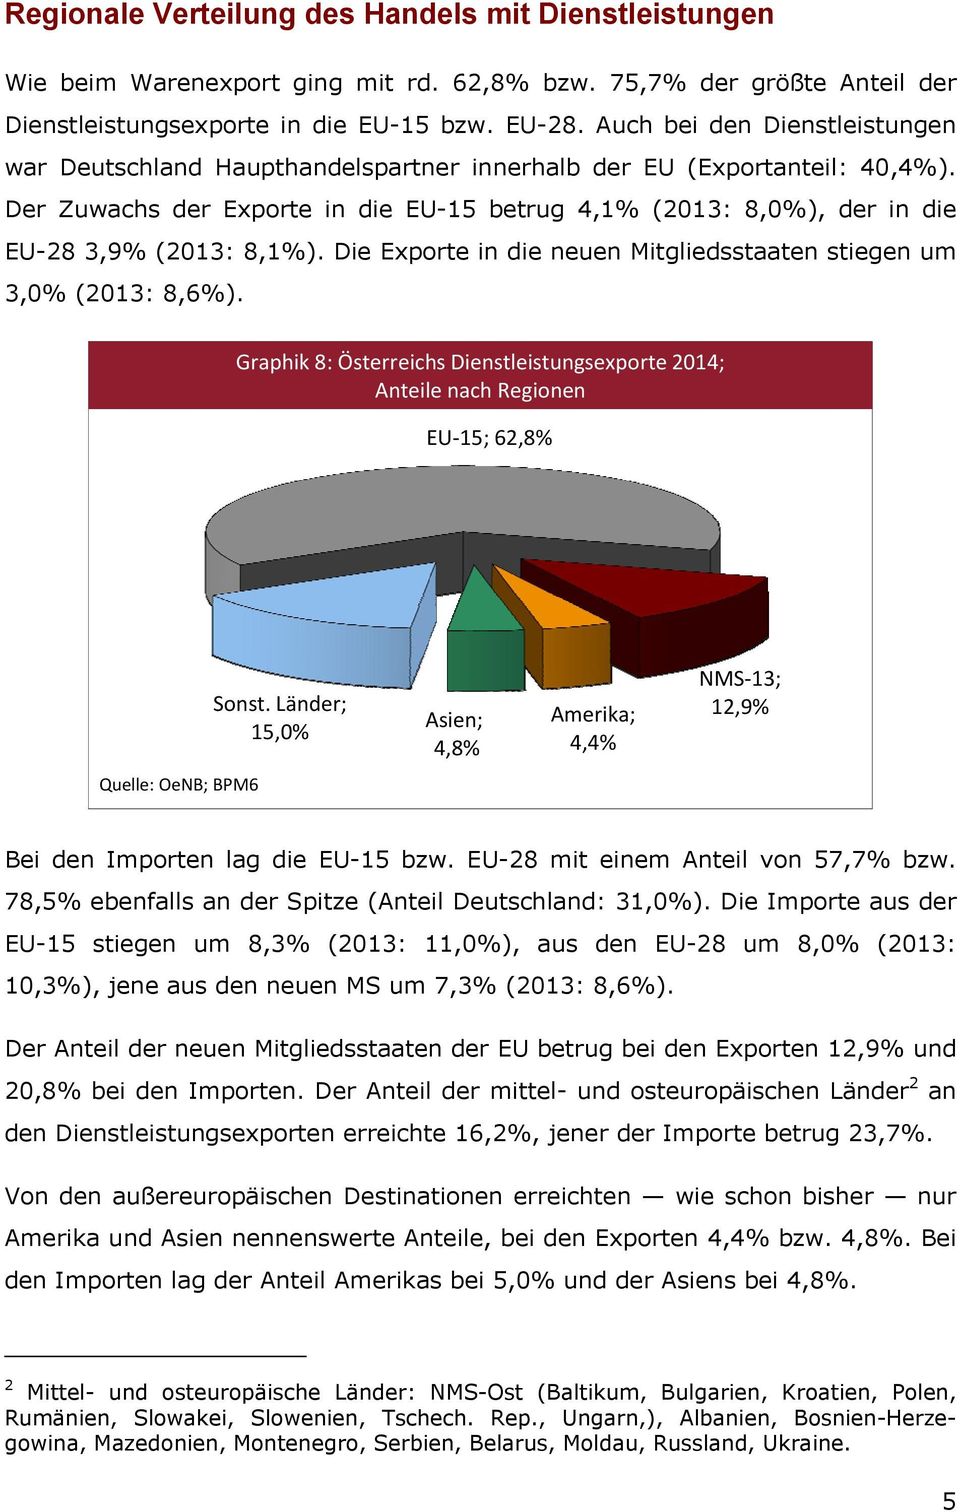 Der Zuwachs der Exporte in die EU-15 betrug 4,1% (2013: 8,0%), der in die EU-28 3,9% (2013: 8,1%). Die Exporte in die neuen Mitgliedsstaaten stiegen um 3,0% (2013: 8,6%).